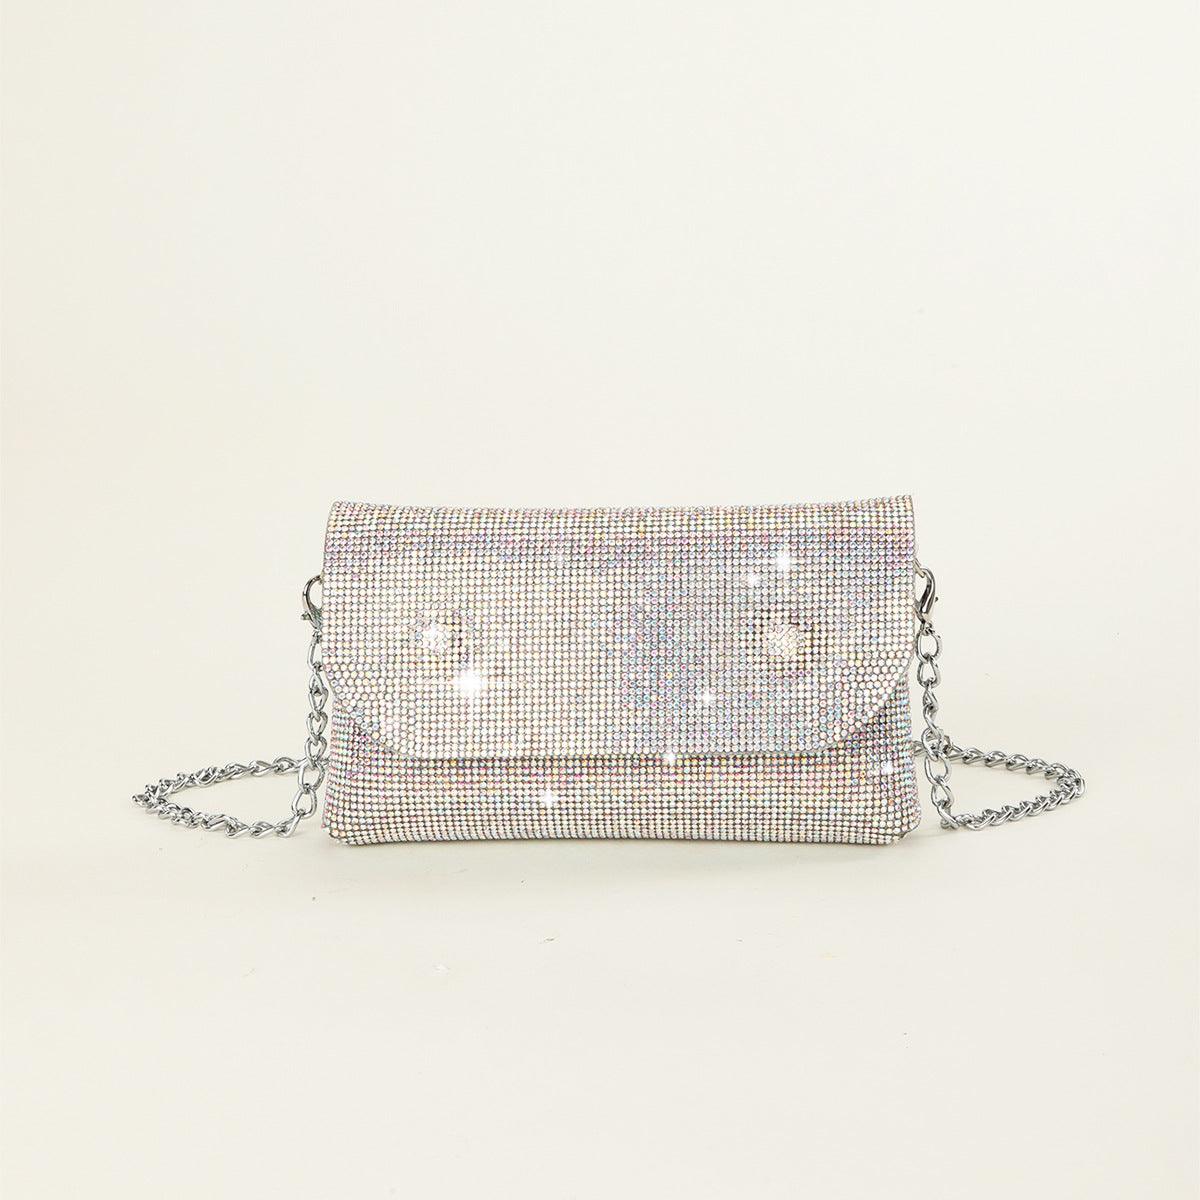 Mini shiny evening Bag - The Trend